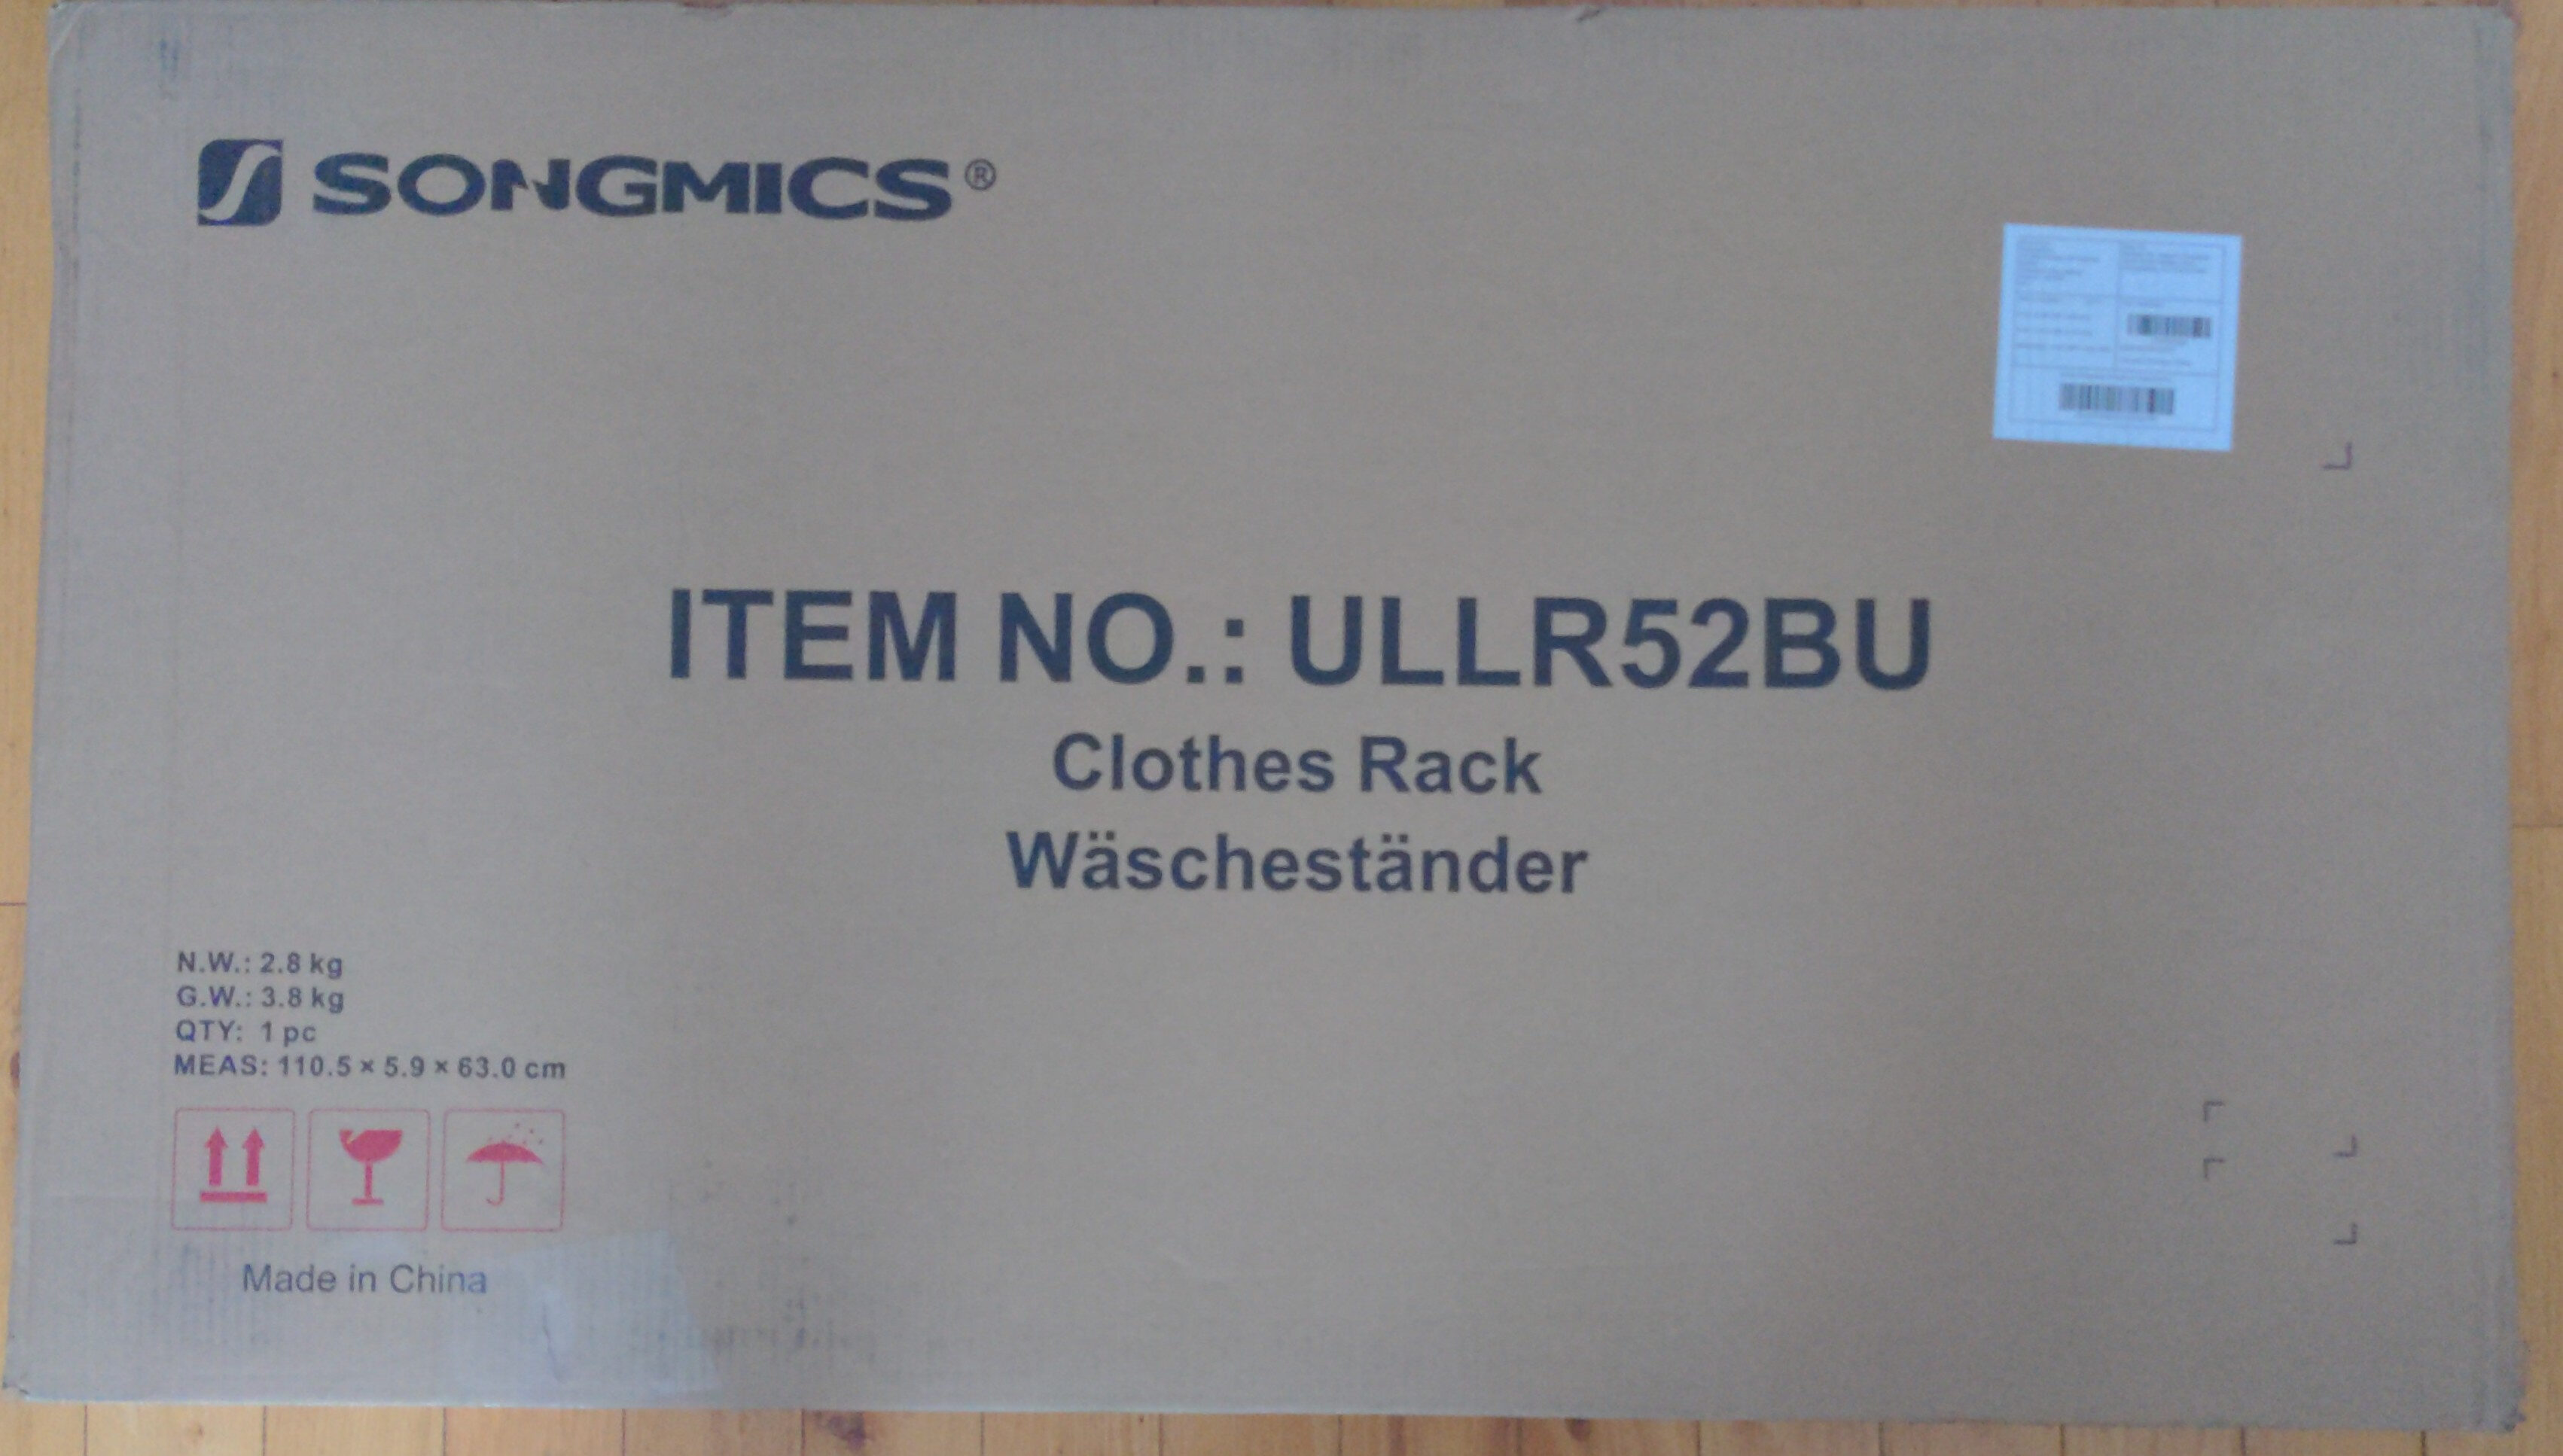 Clothes rack - Product - en